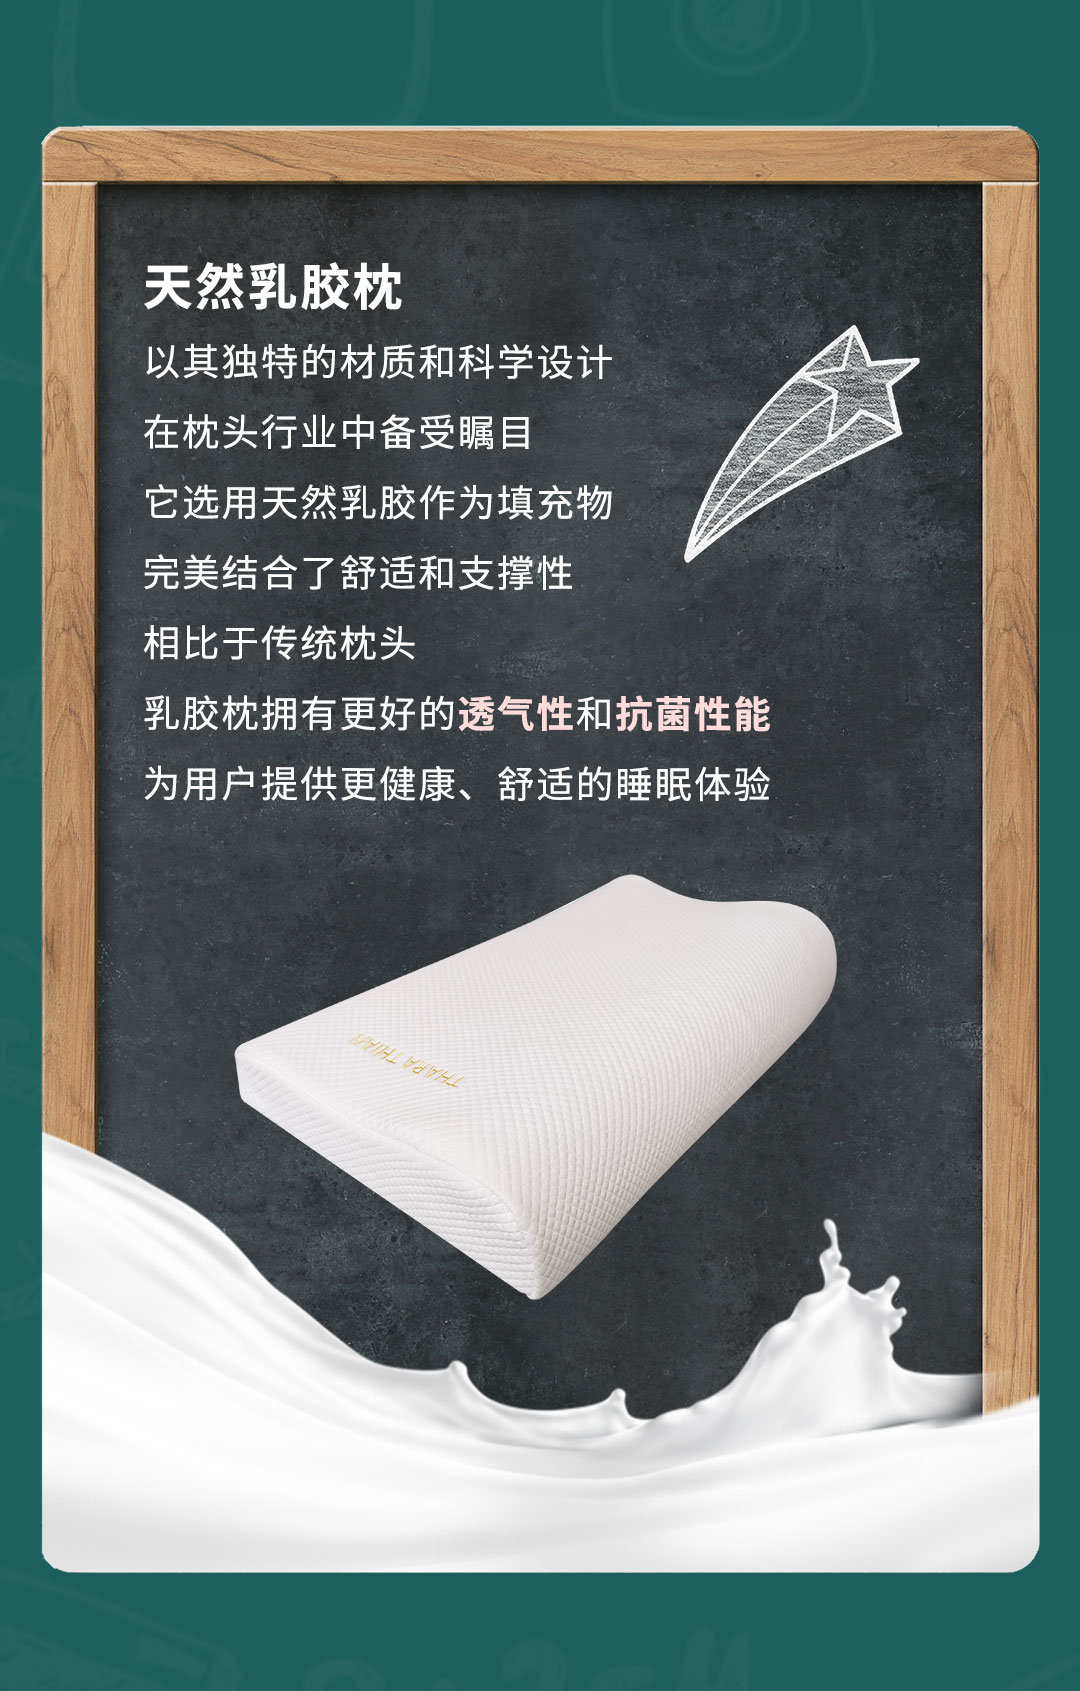 教师节感恩之选：天然乳胶枕的静谧与呵护_03.jpg